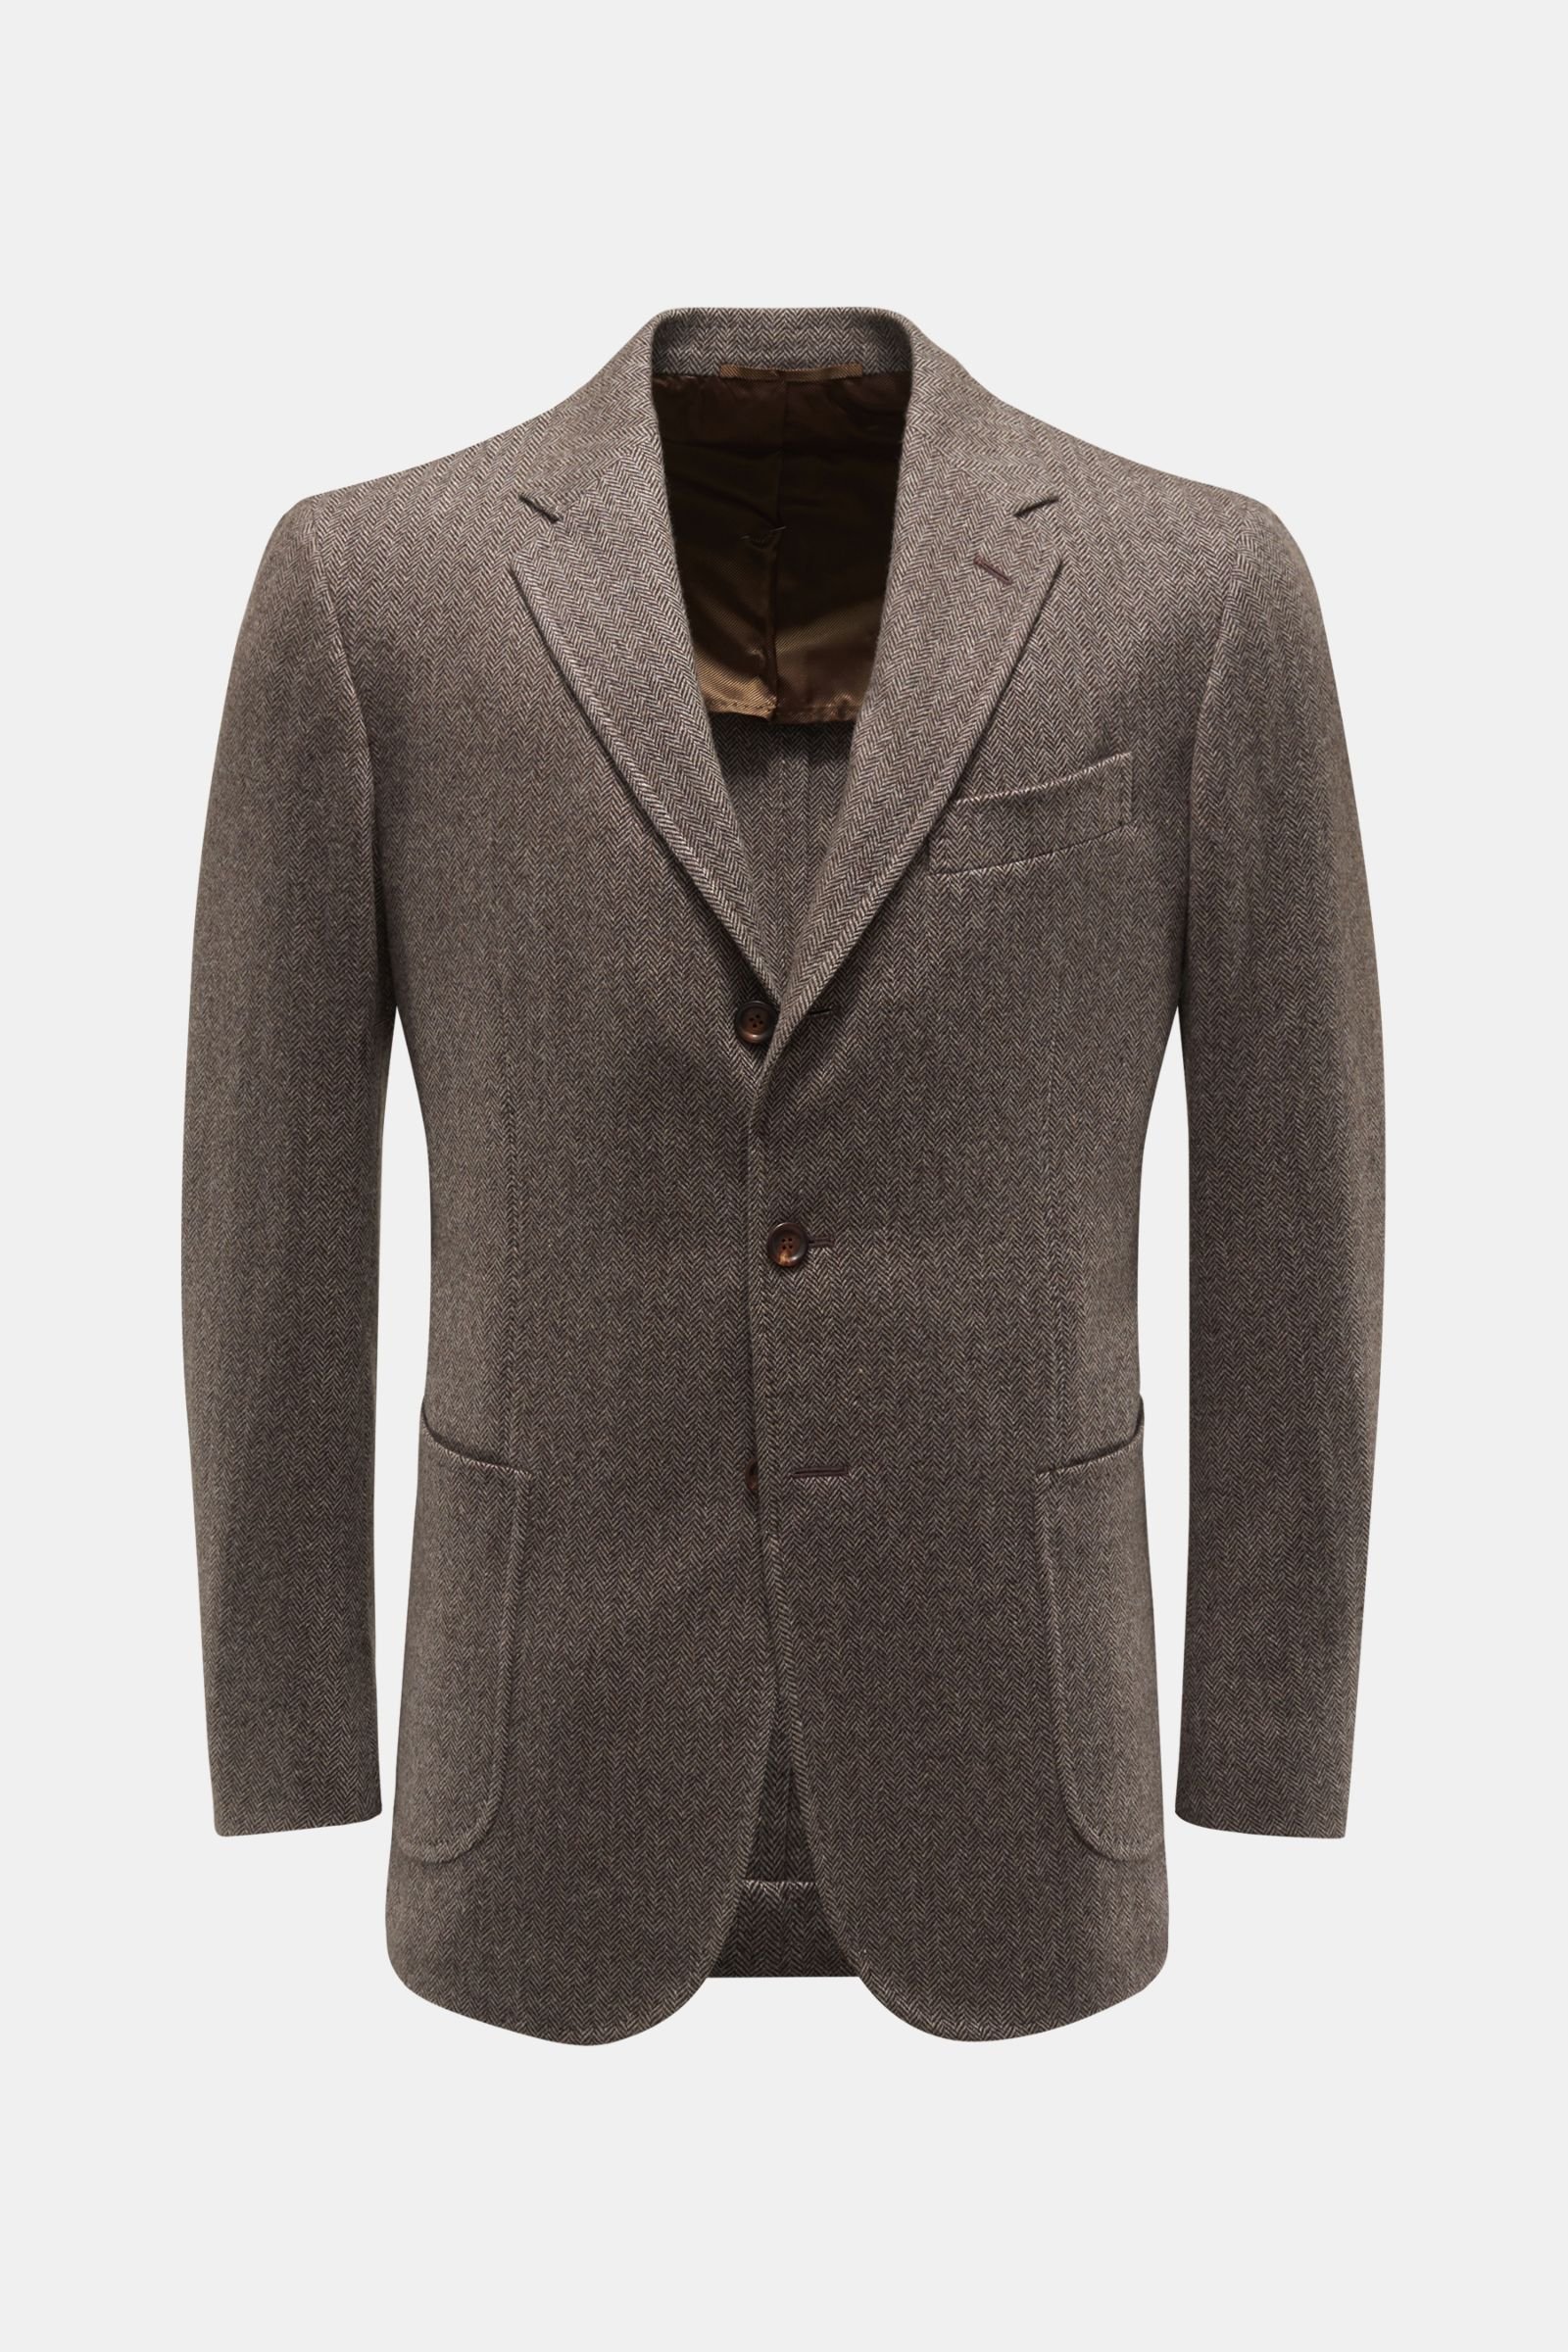 Cashmere smart-casual jacket 'Vincenzo' dark brown/beige patterned